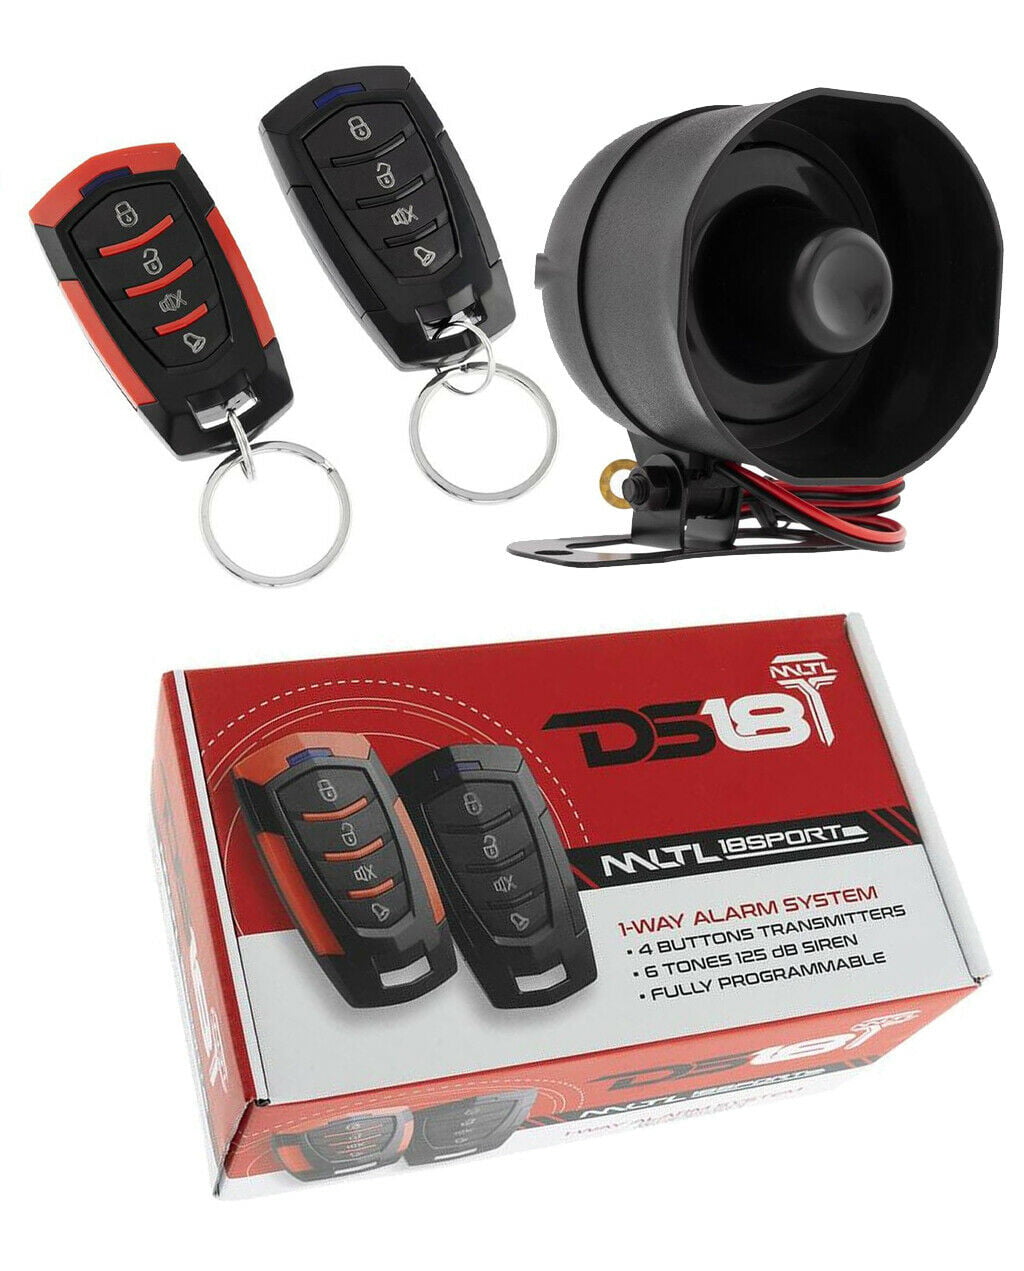 OARTXAM2000 keyless remote car alarm transmitter start starter astra clicker red 